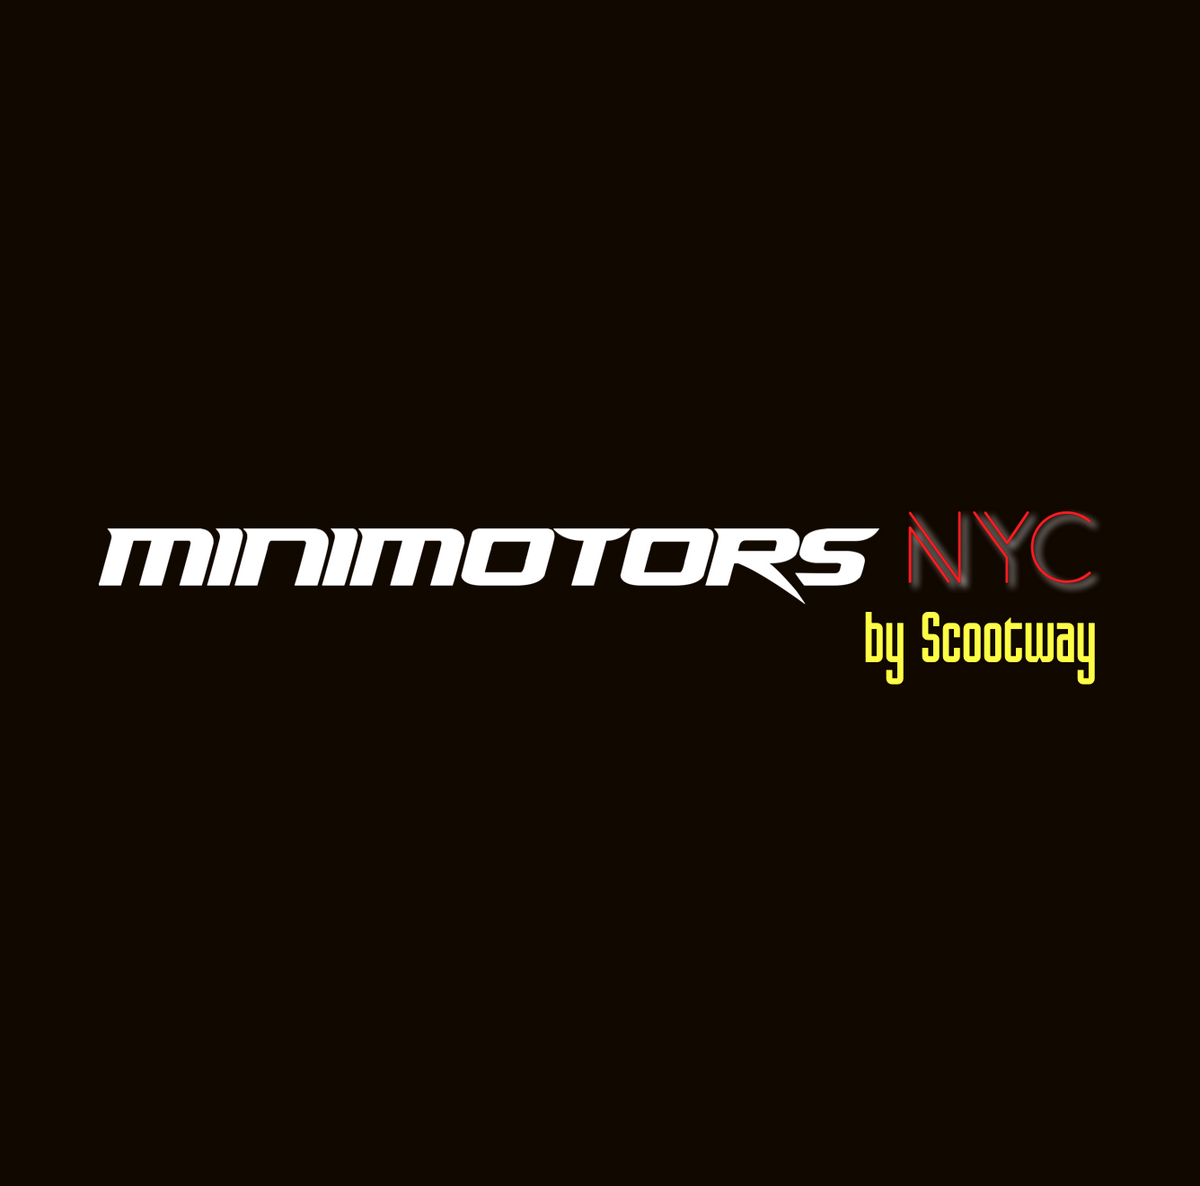 Minimotors NYC - Dualtron Mini LTD